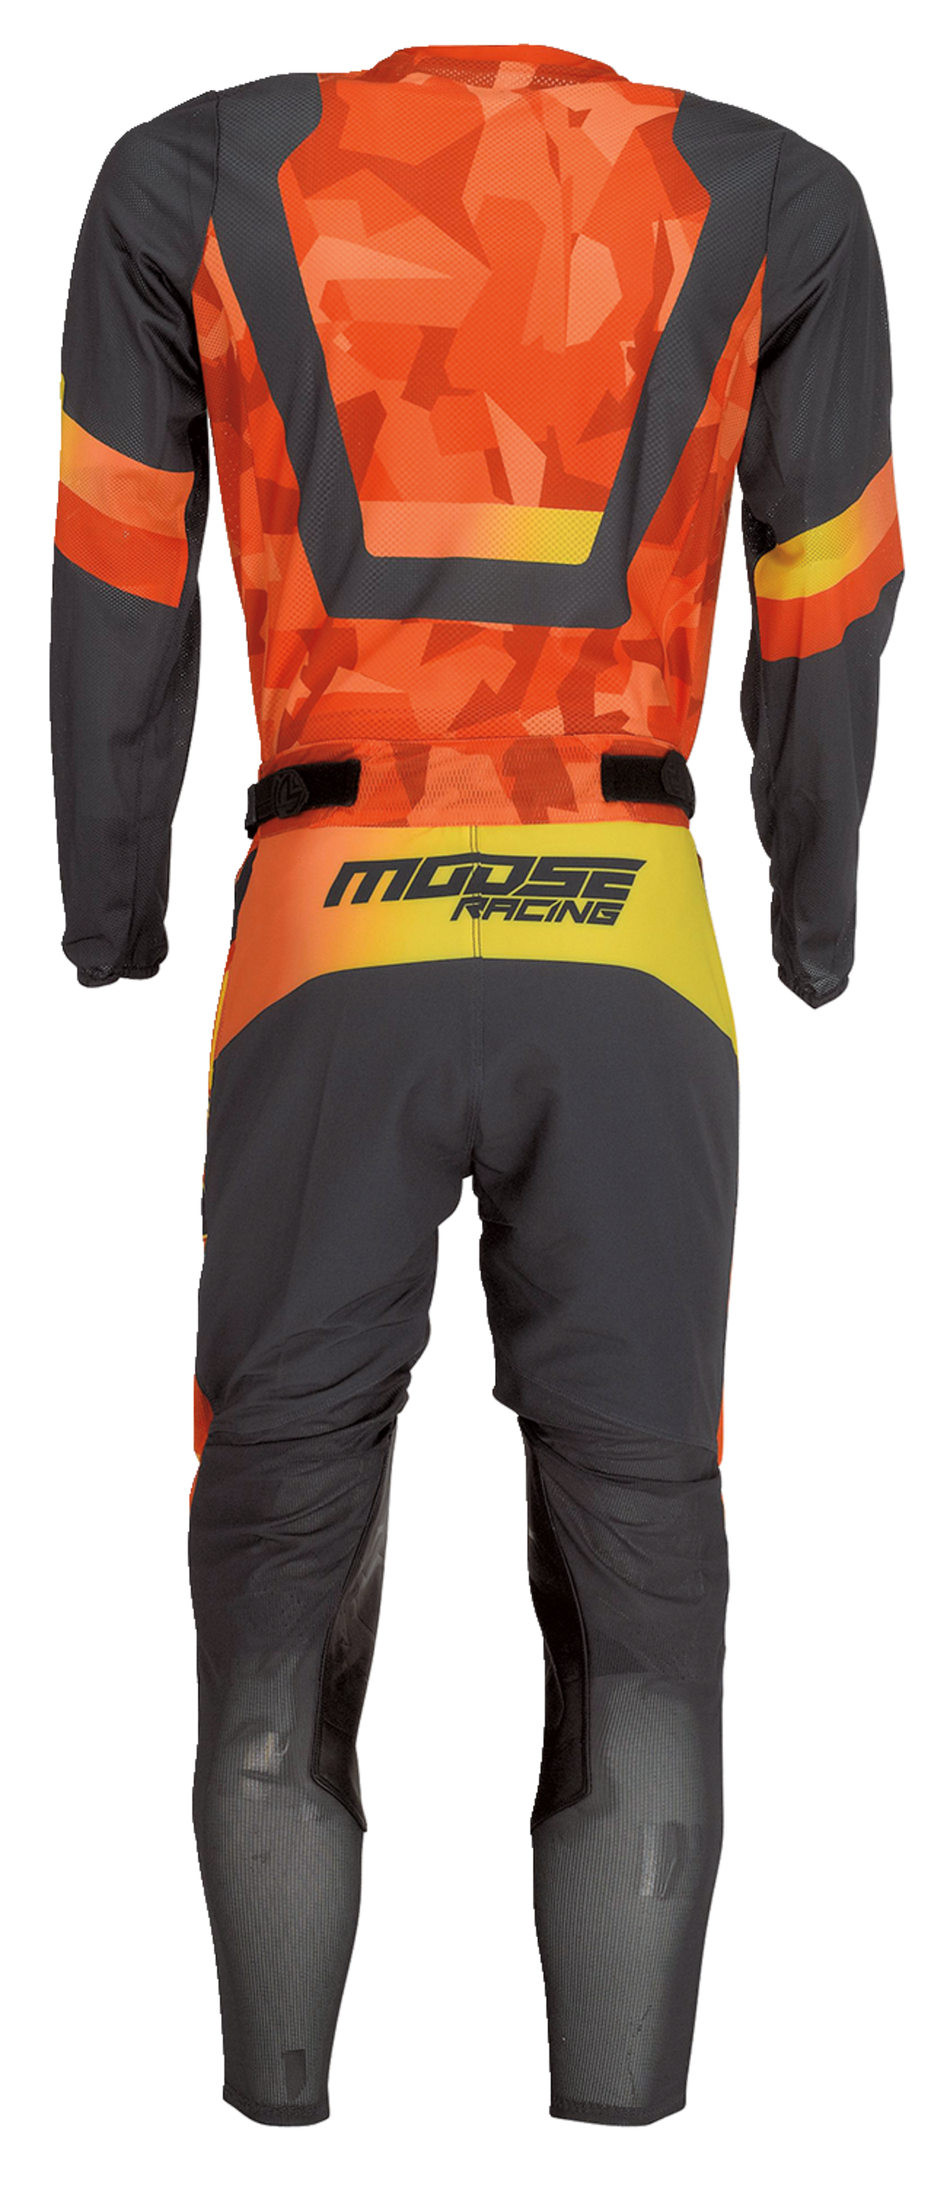 MOOSE RACING Sahara™ Jersey - Orange/Black - XL 2910-7225